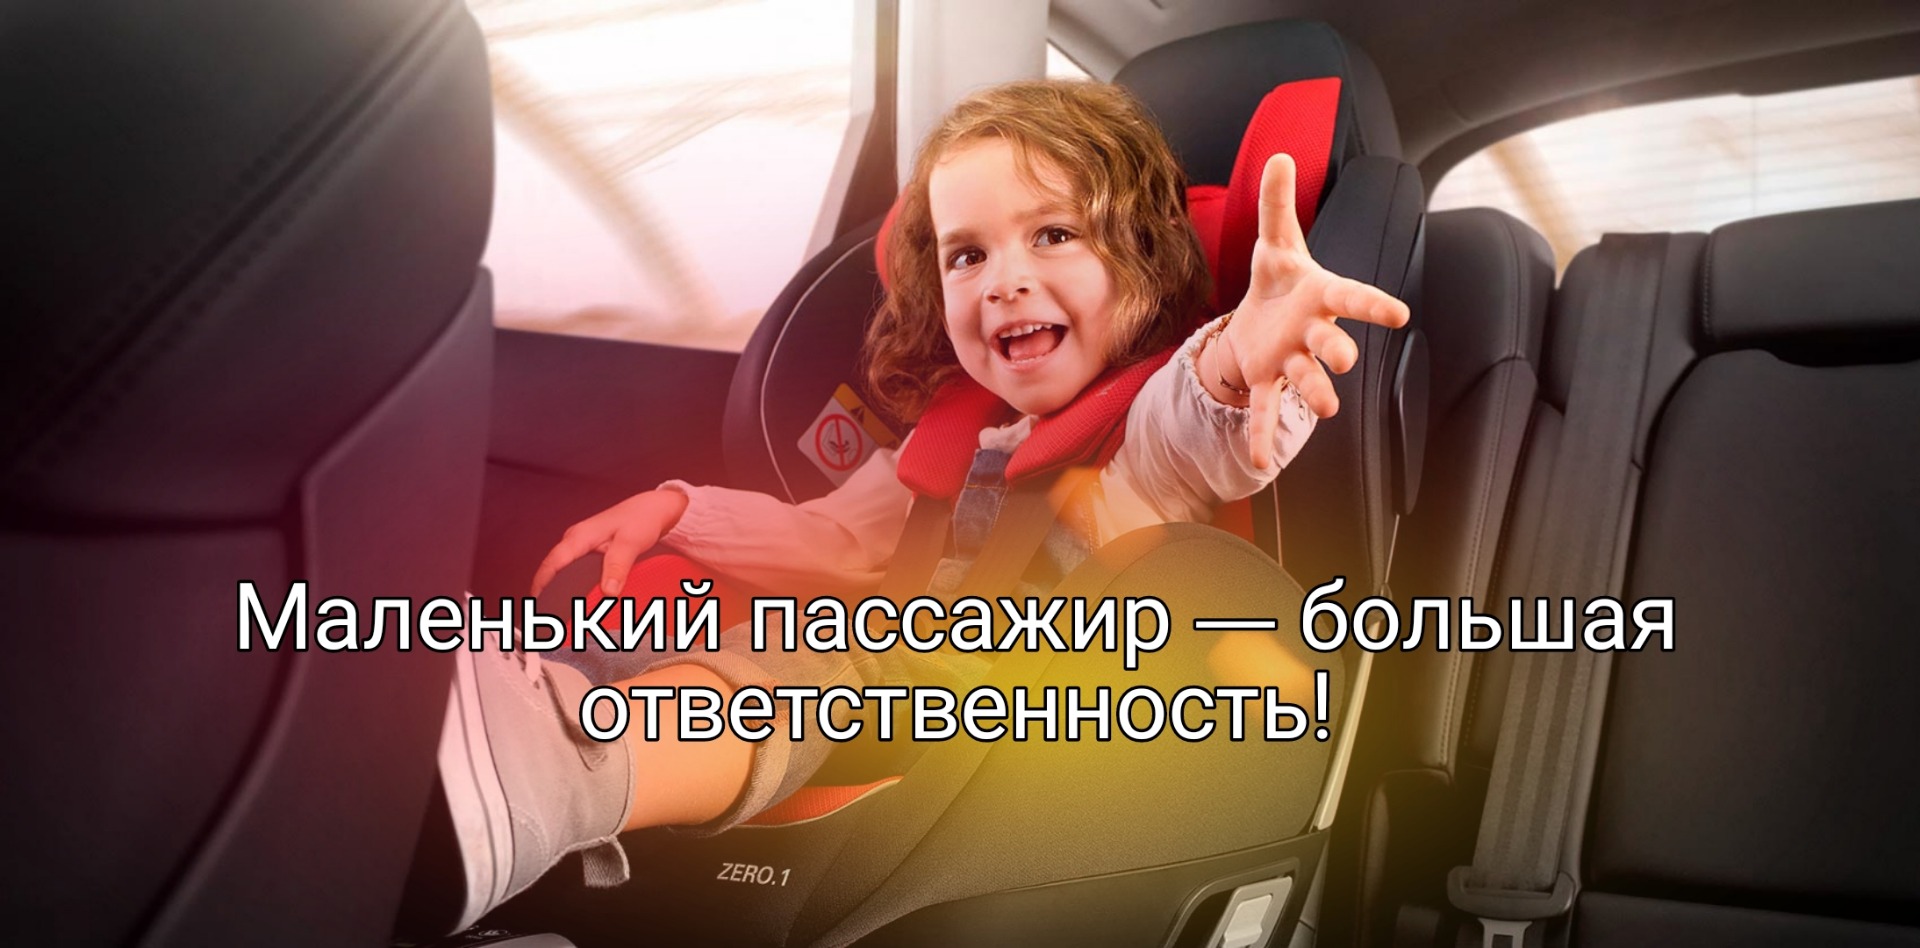 Ребенок пассажир